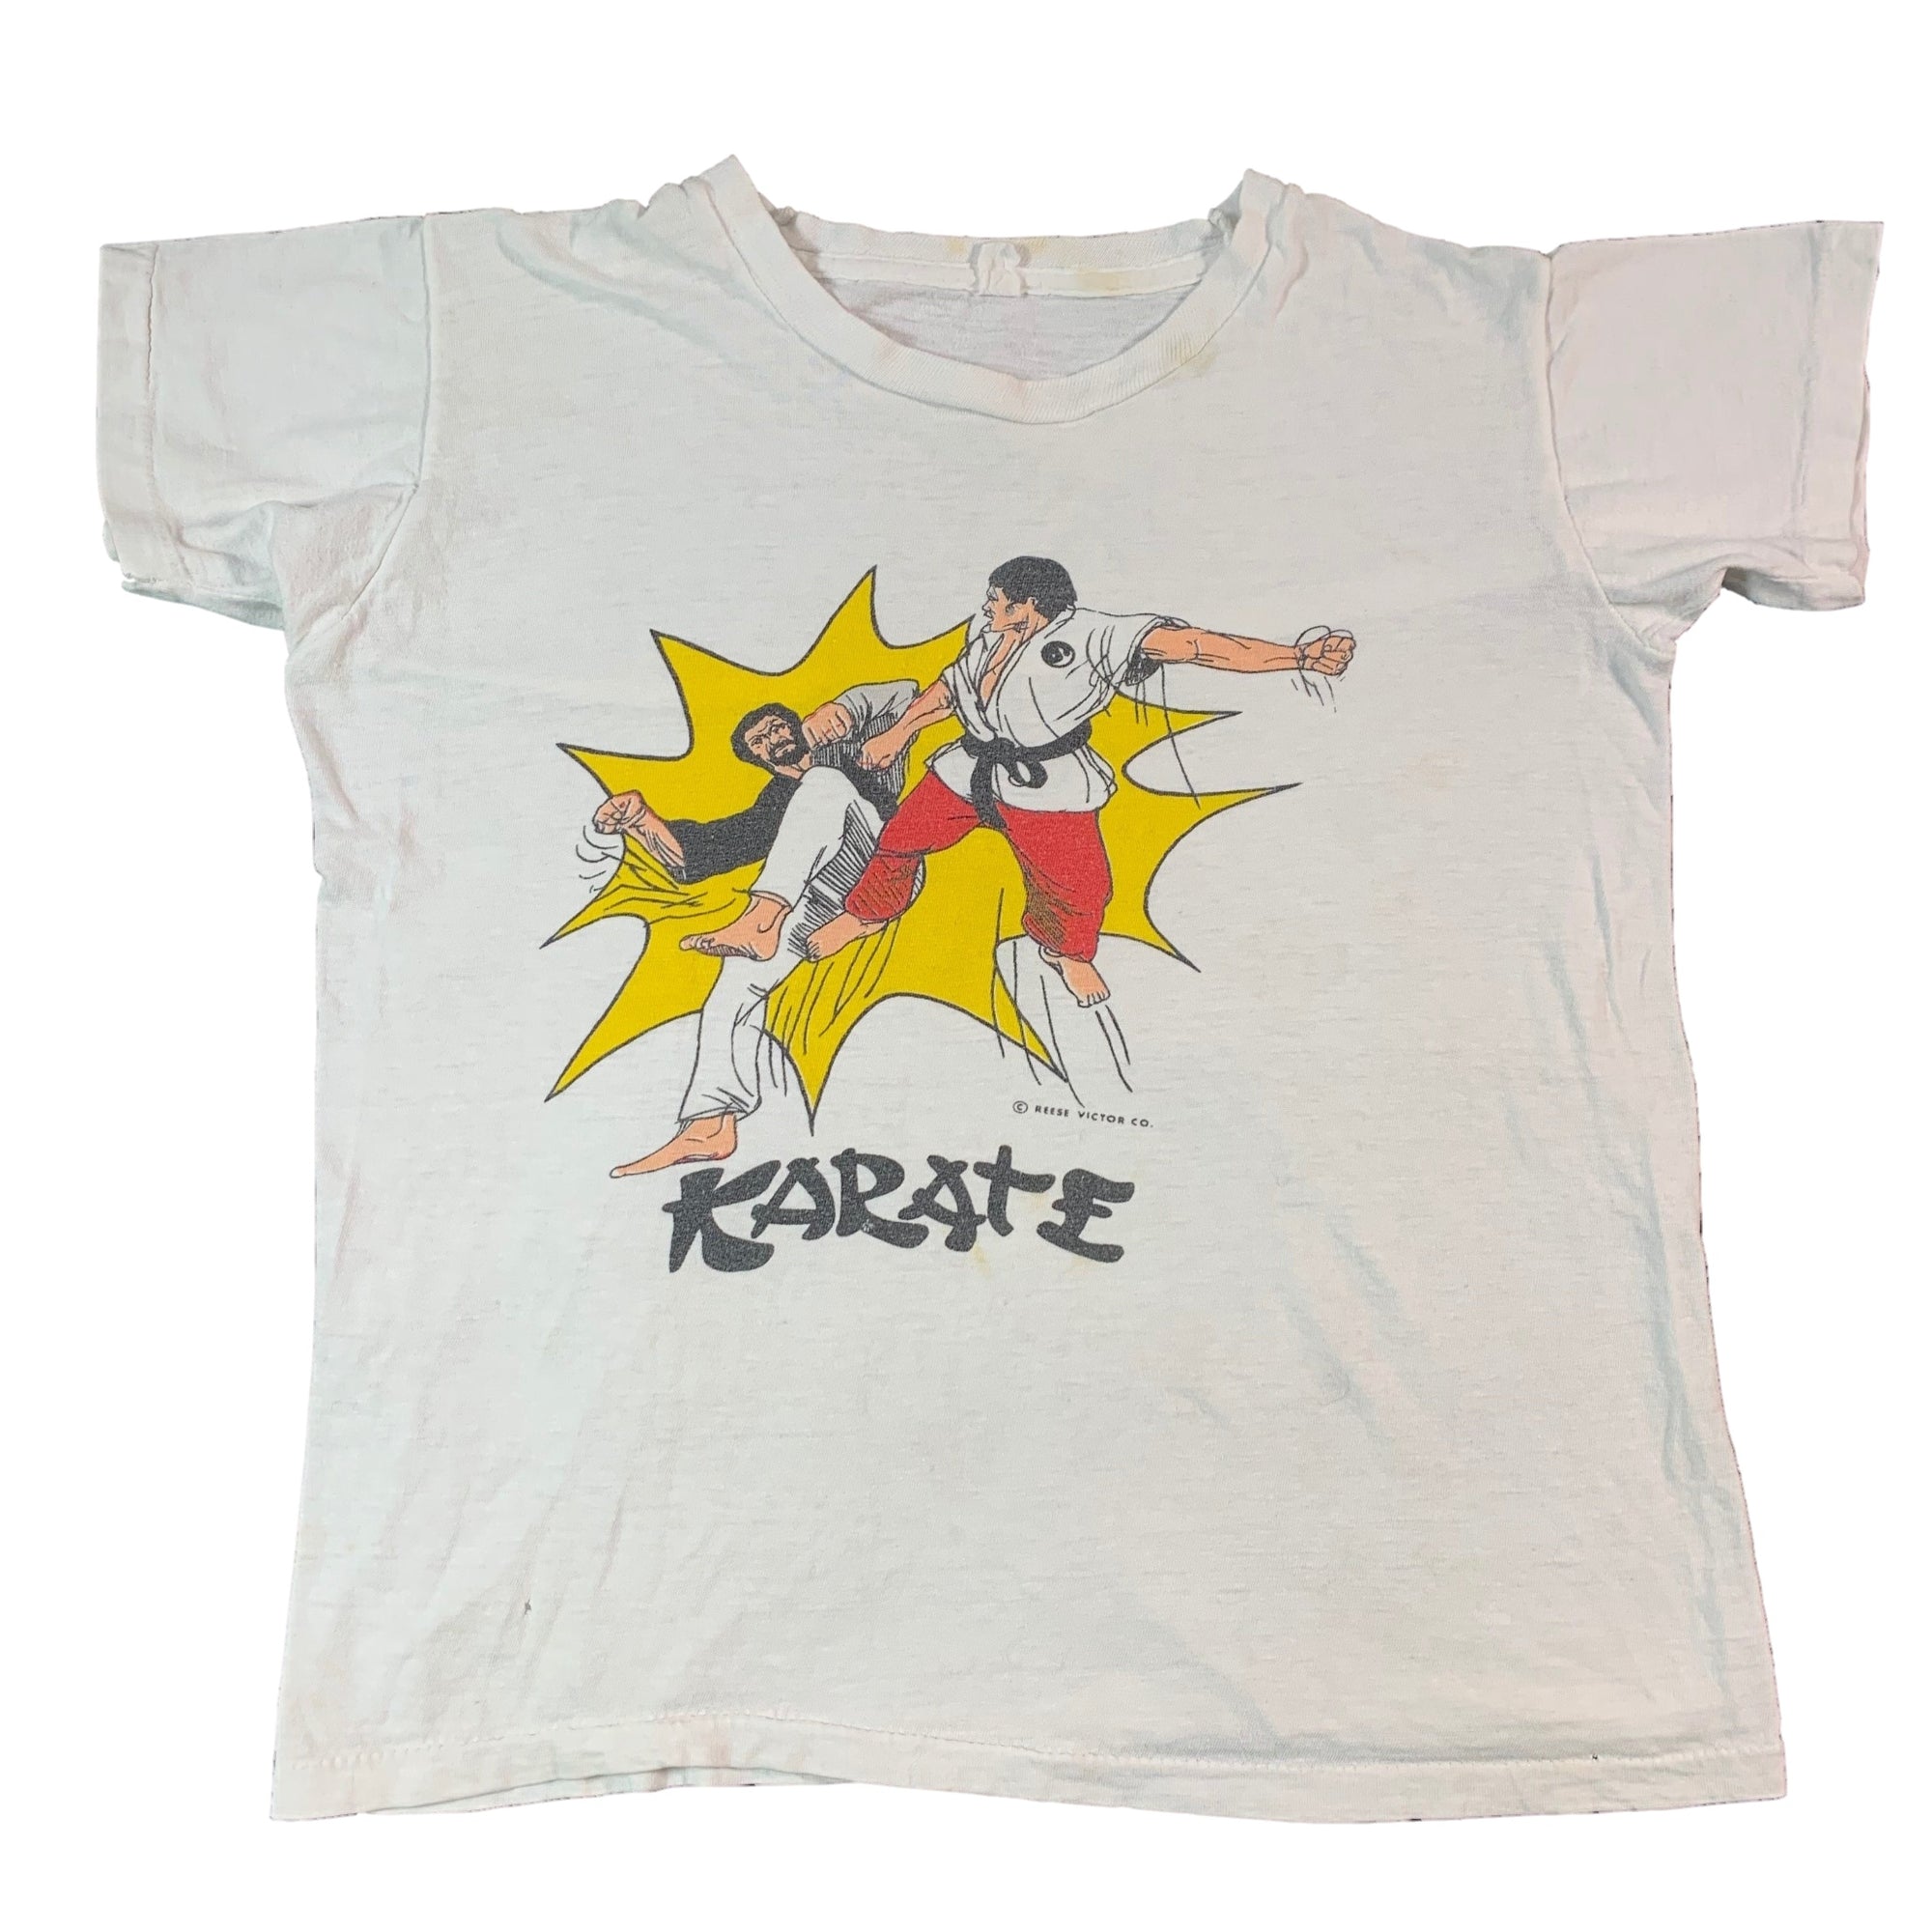 Vintage Reese Victor Co. "Karate" Kid's T-Shirt - jointcustodydc